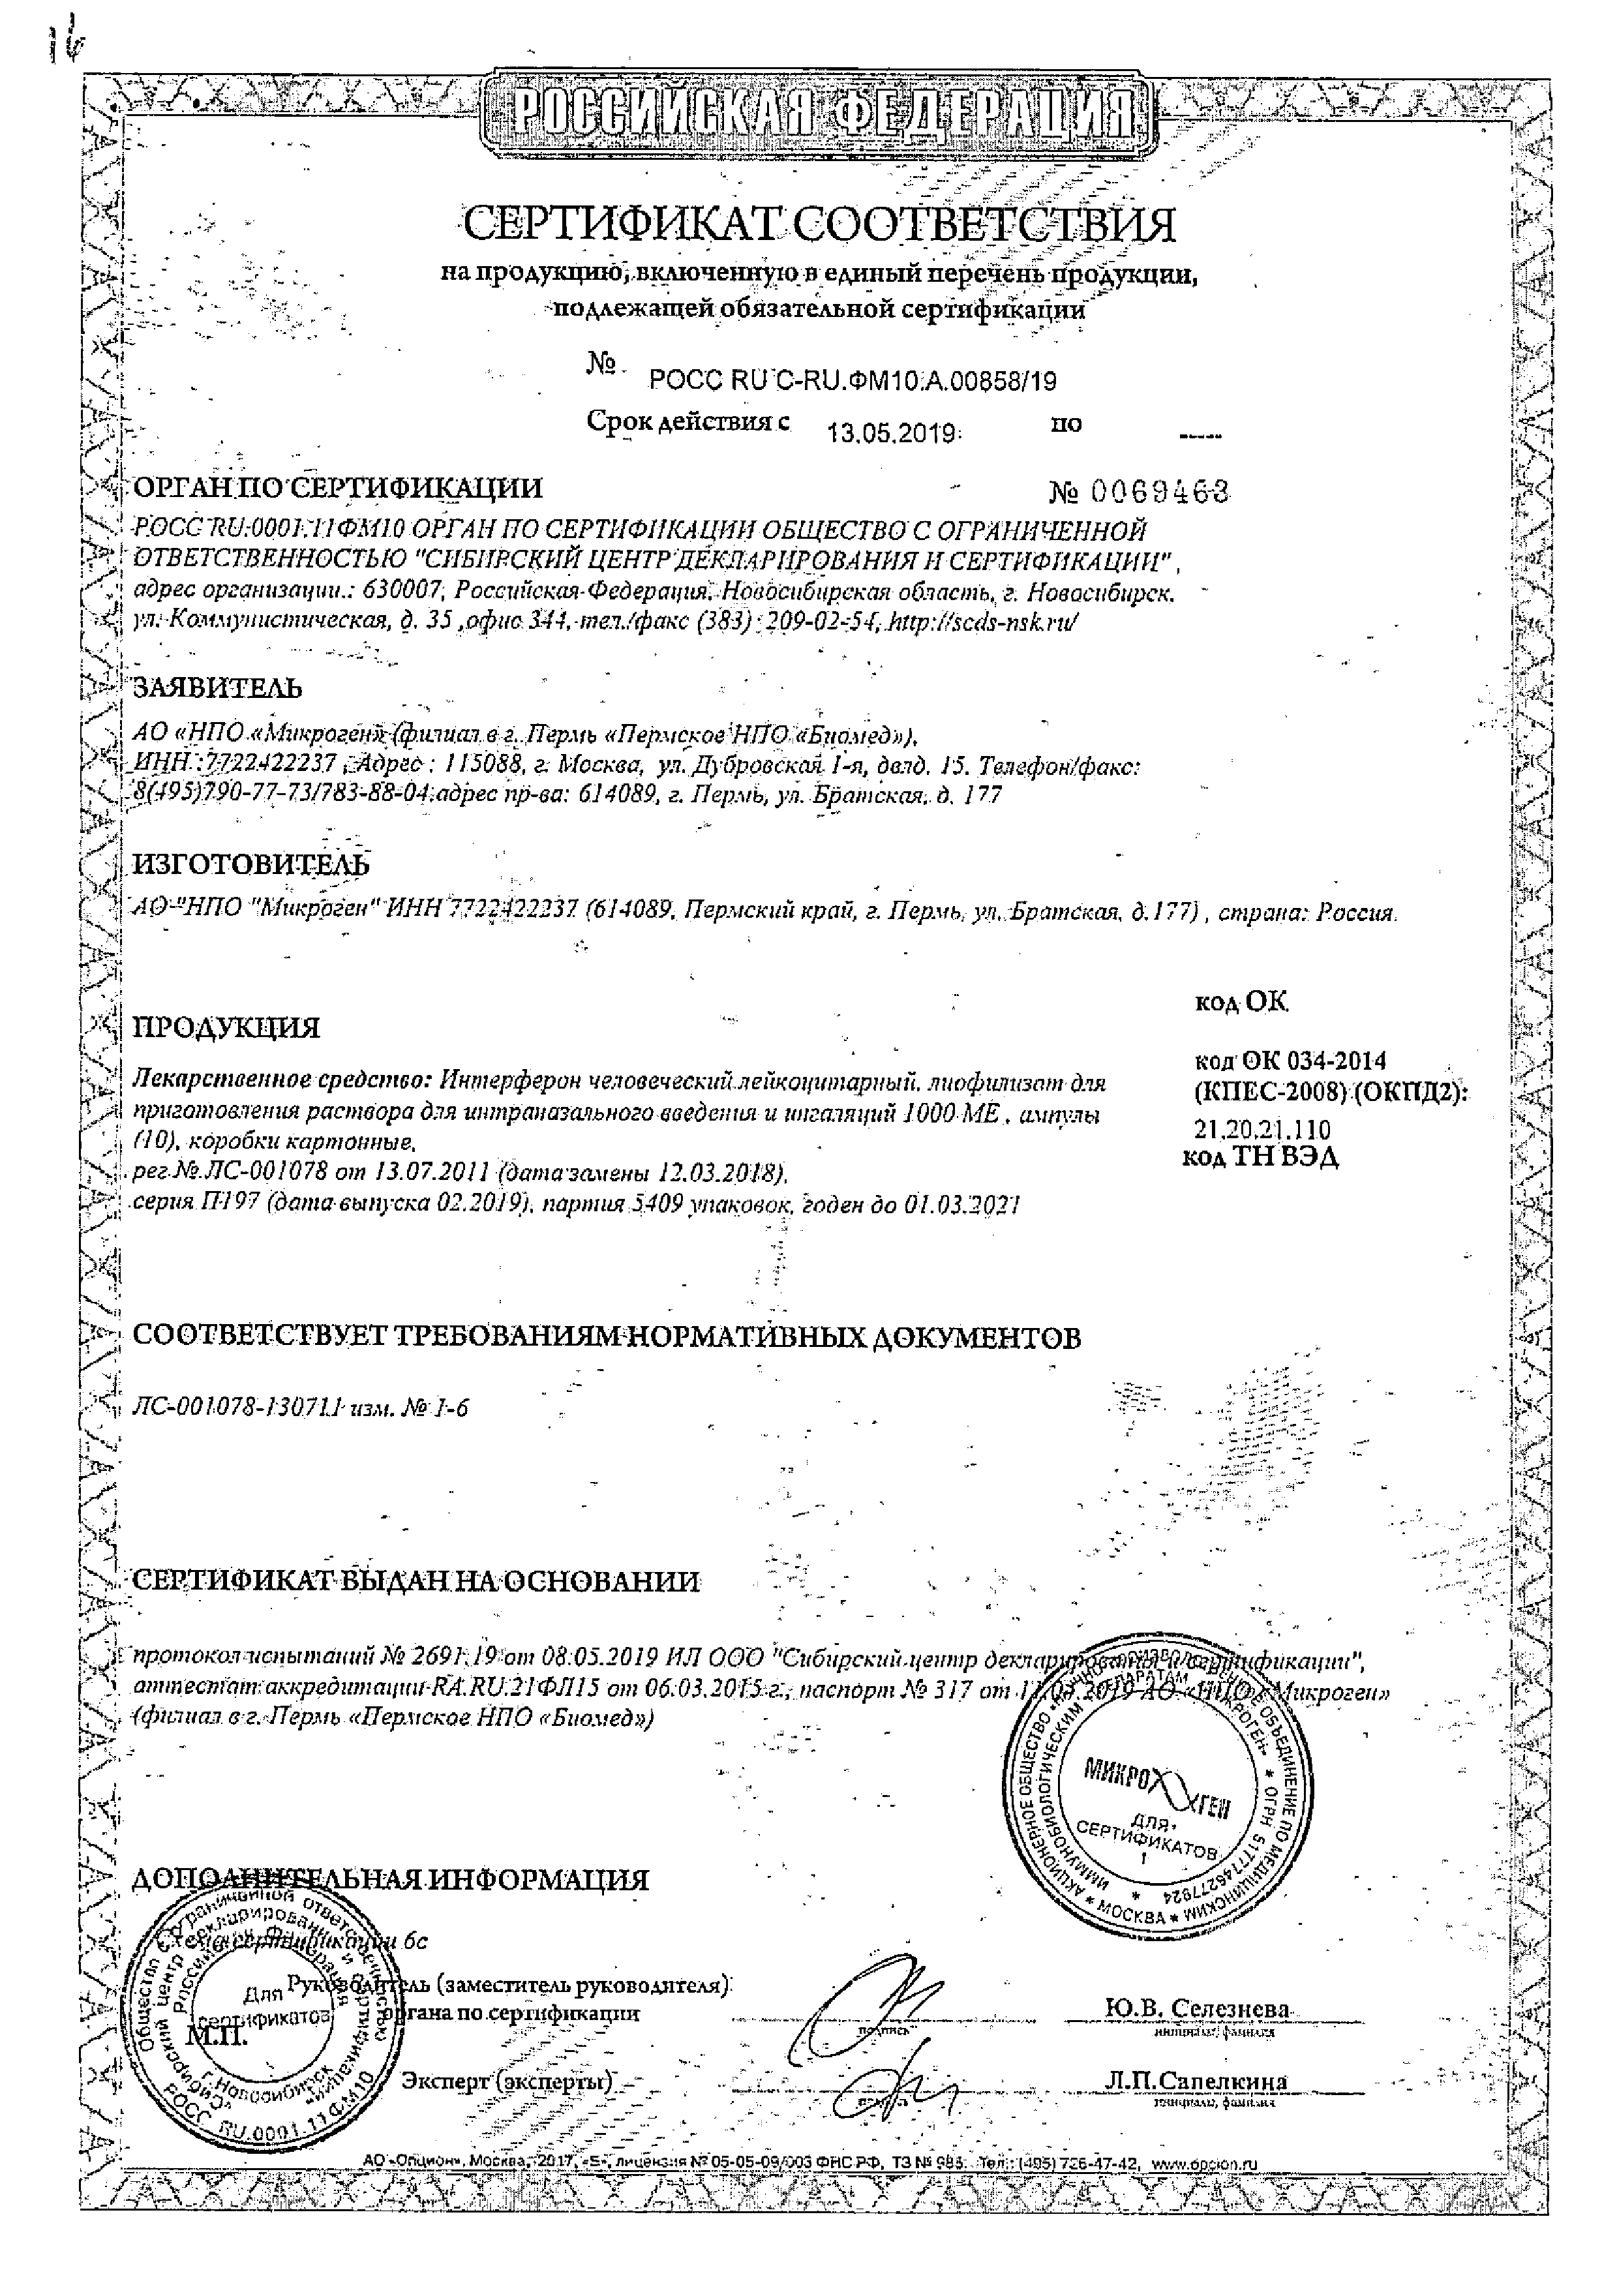 Интерферон человеческий лейкоцитарный сертификат